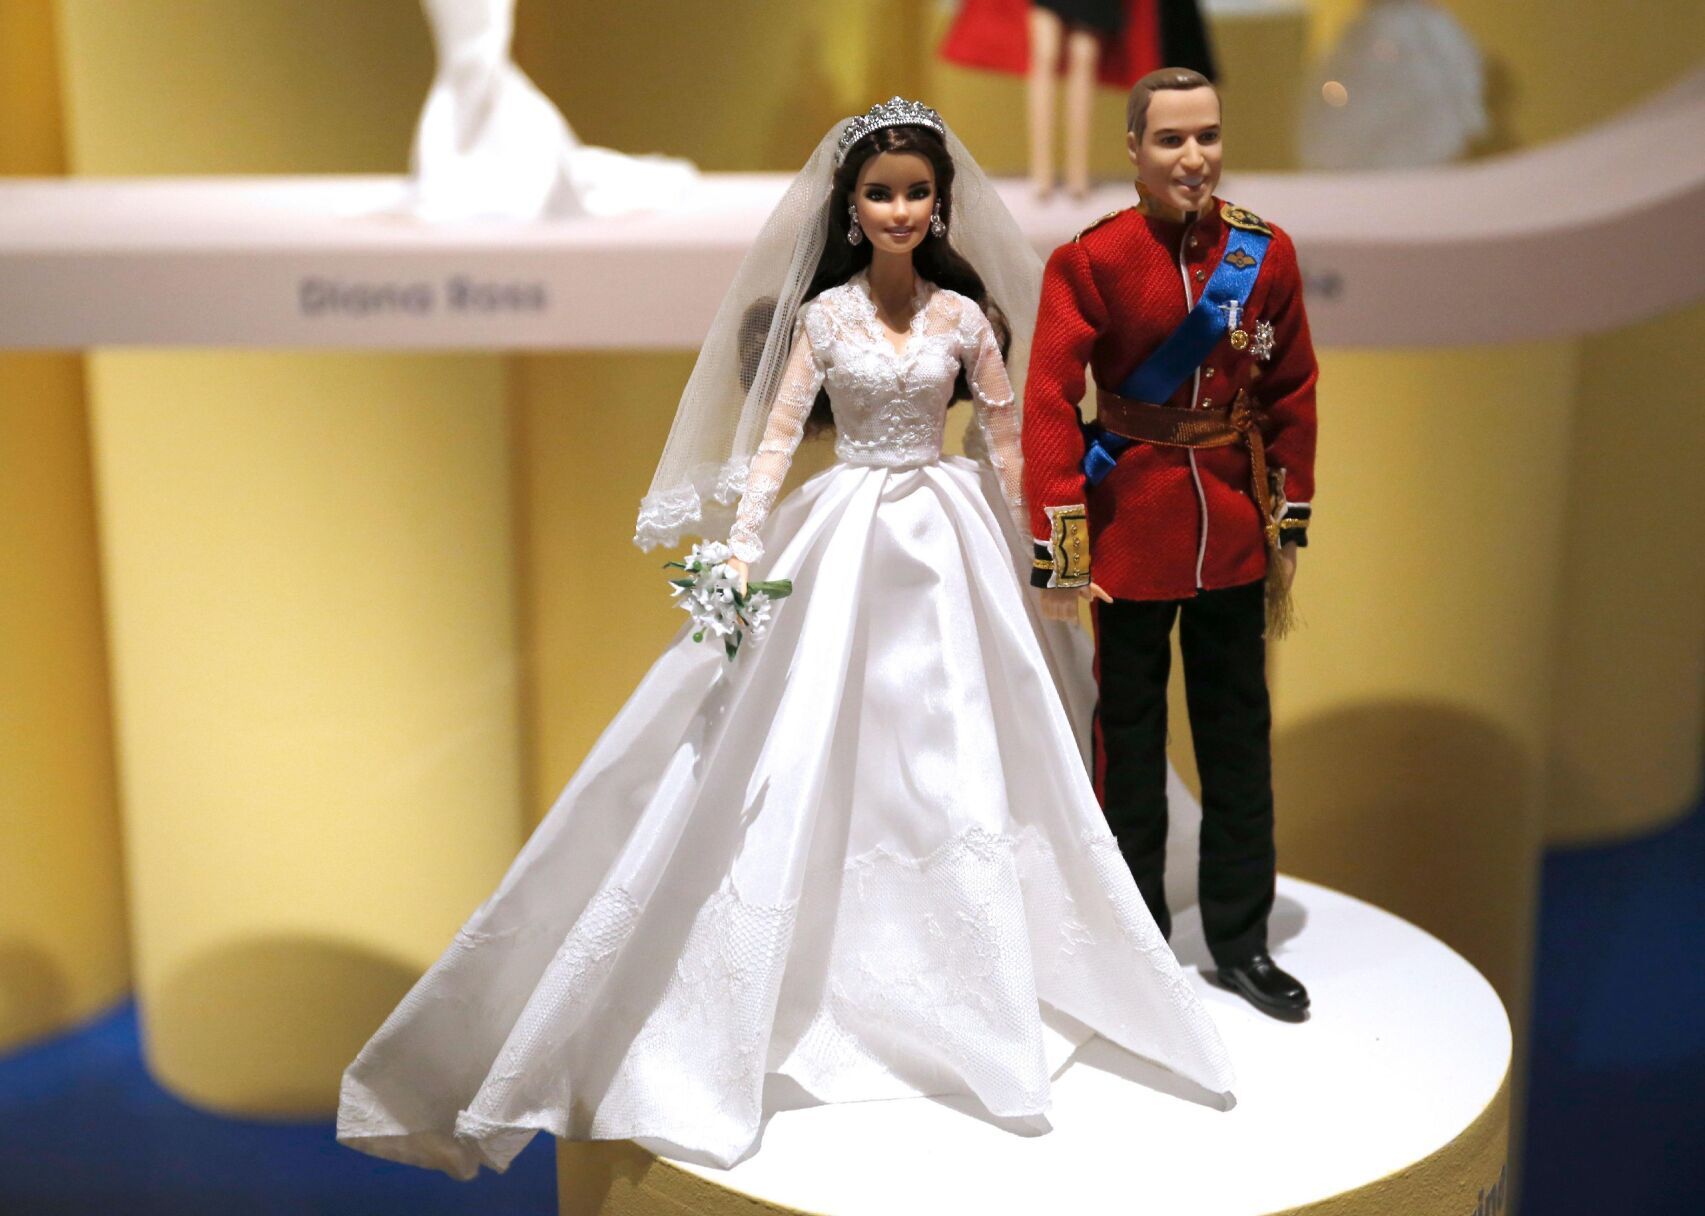 barbie poops in her wedding dress